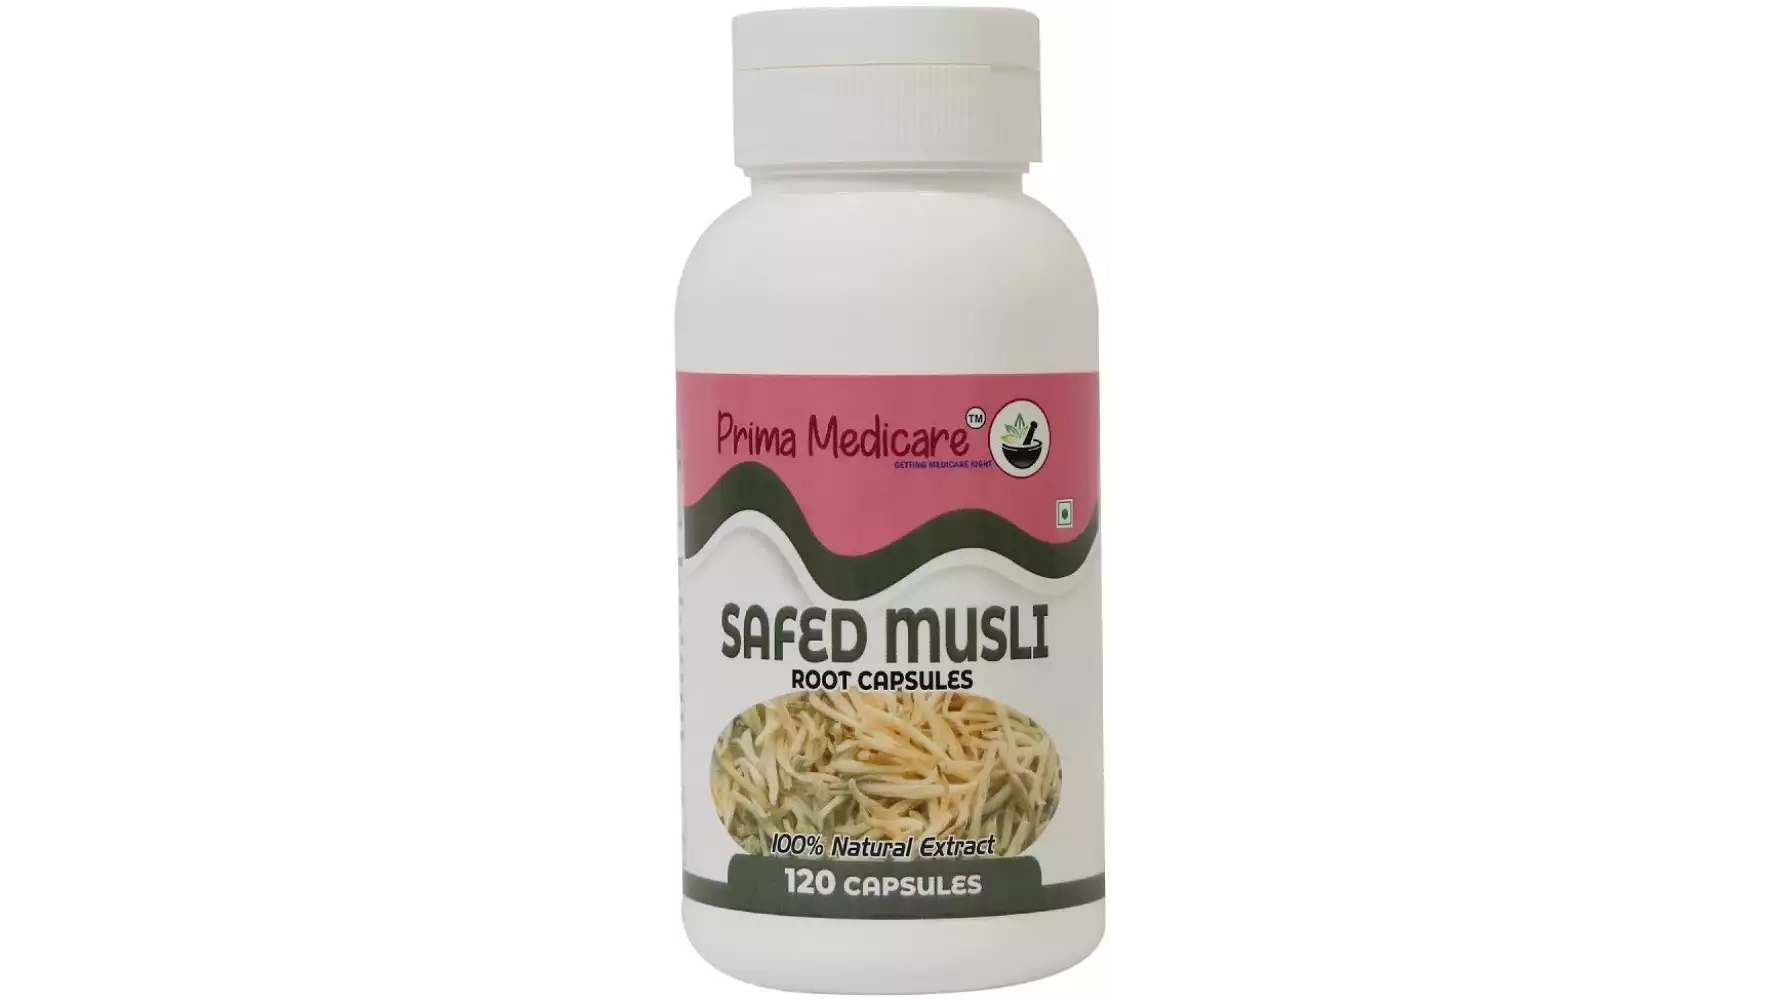 Prima Medicare Safed Musli Root Capsules (120caps)